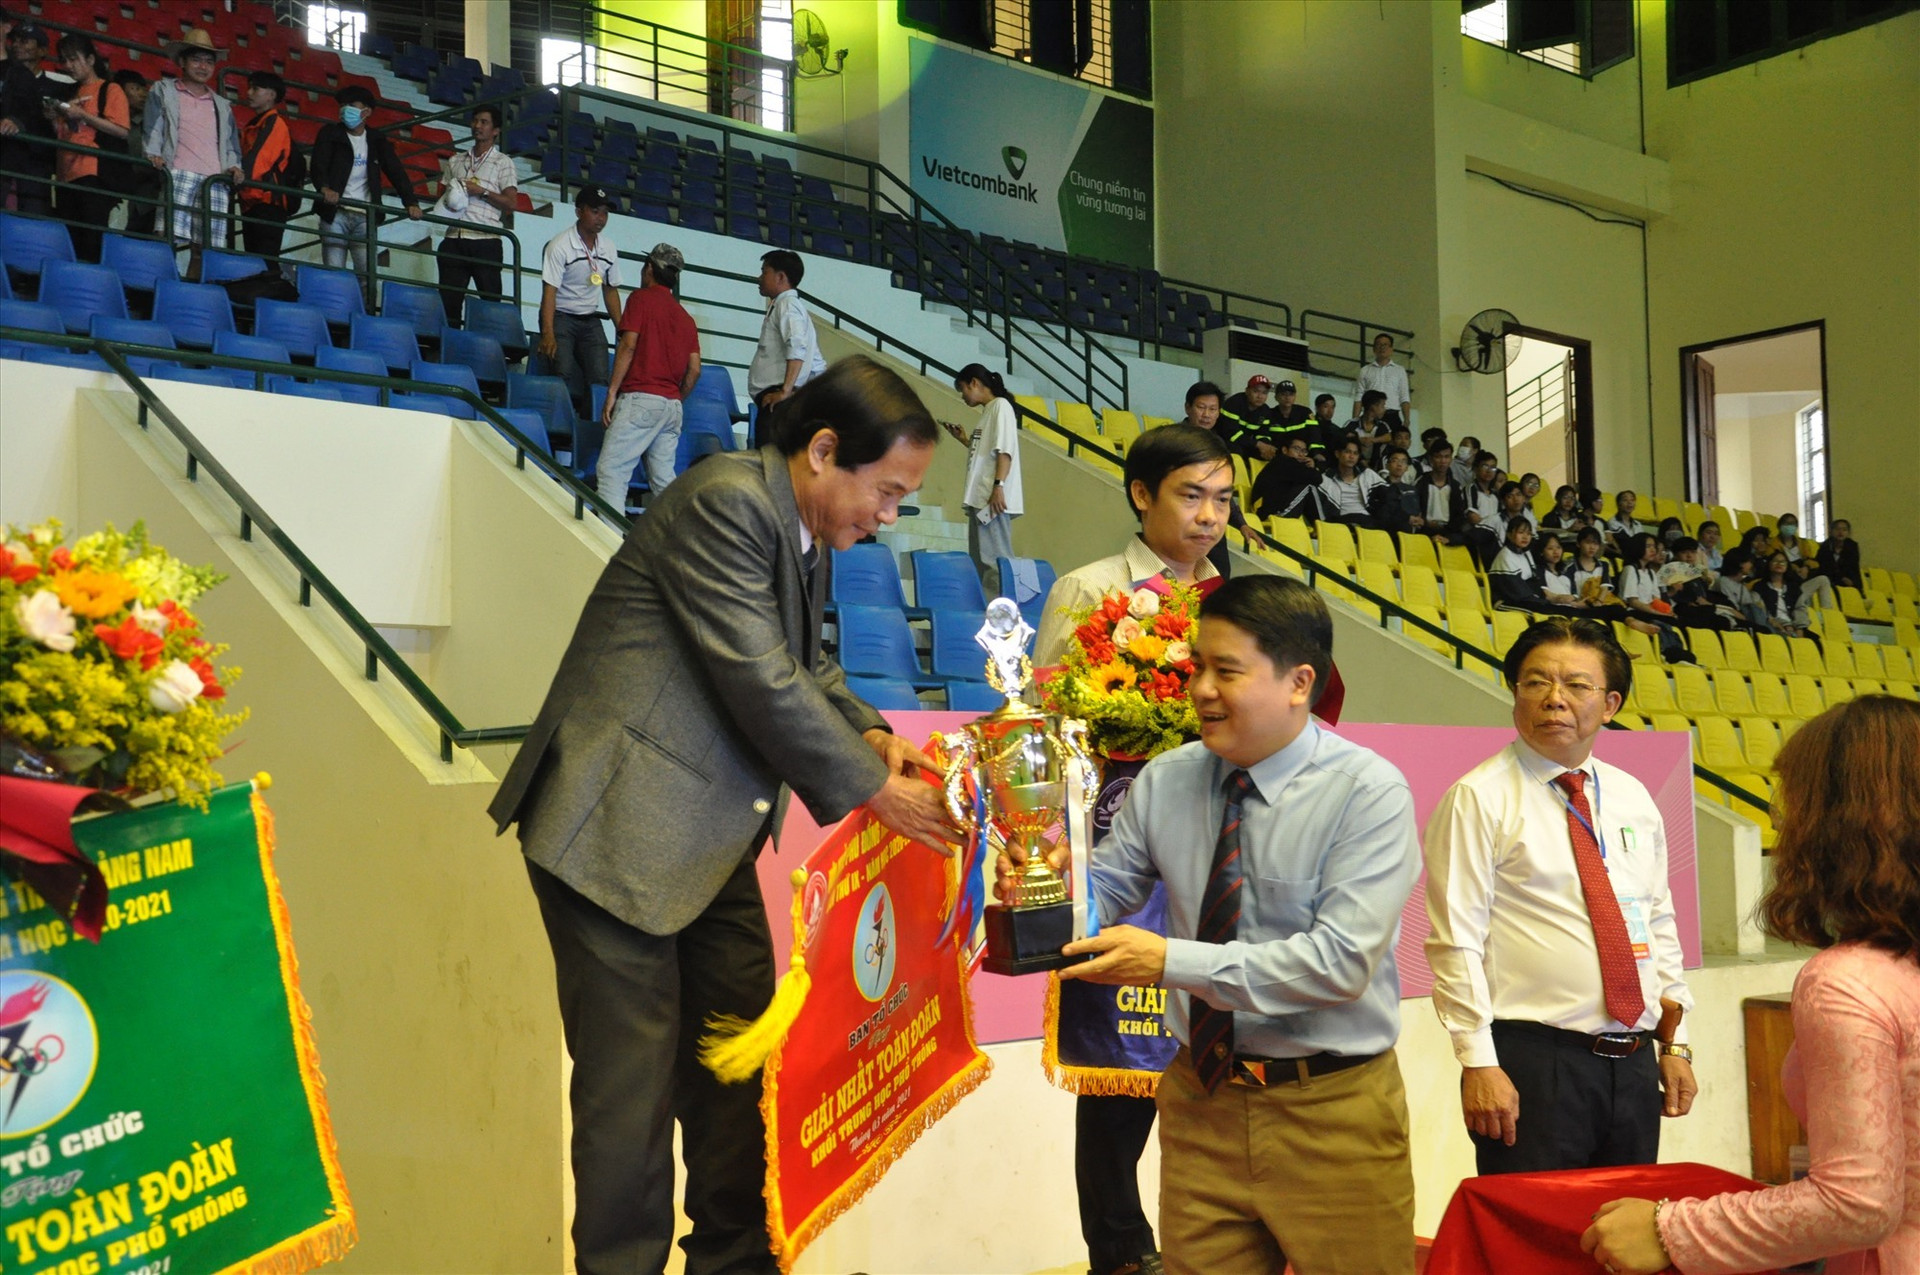 Phó Chủ tịch UBND tỉnh Trần Văn Tân trao cúp vô địch toàn đoàn cho Trường THPT chuyên Nguyễn Bỉnh Khiêm. Ảnh: X.P